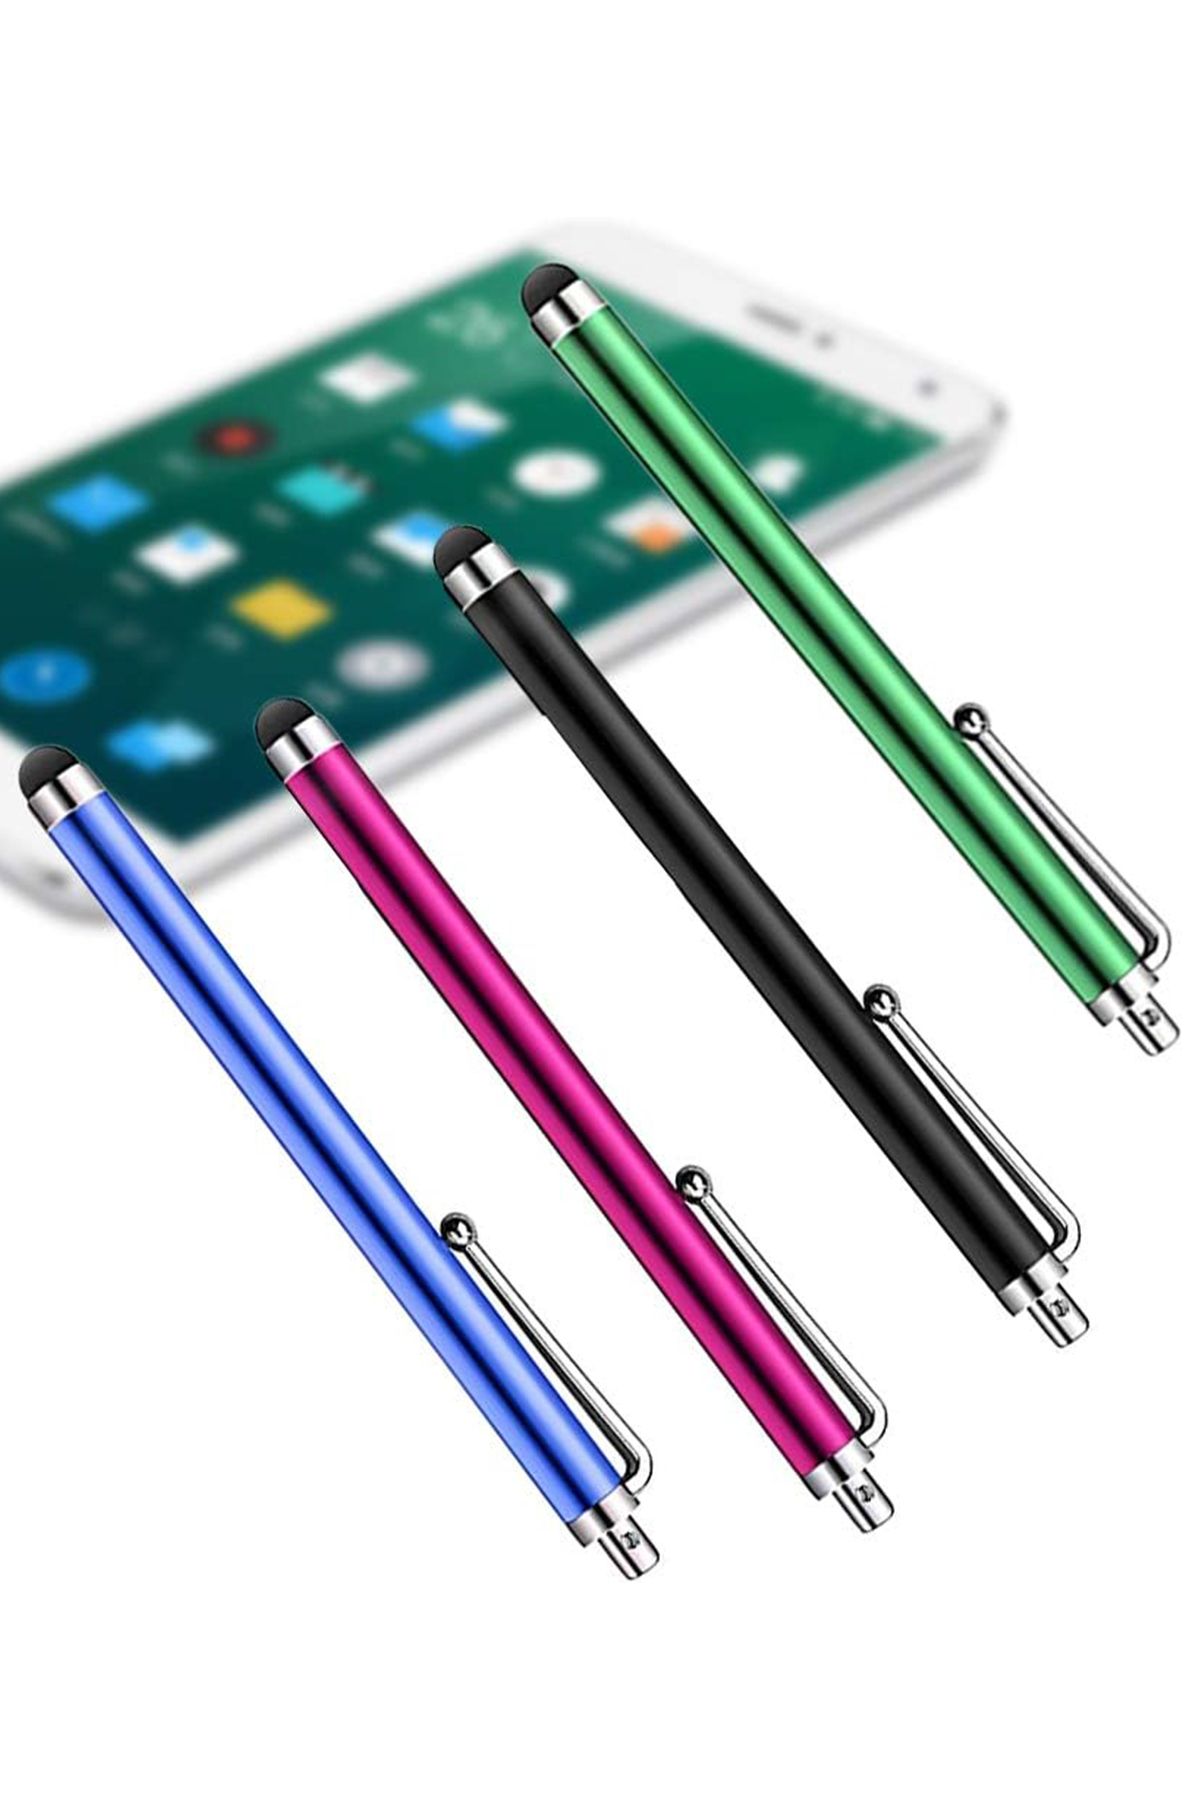 New Market Tablet Akıllı Tahta Dokunmatik Kalem Tüm Dokunmatik Yüzeylerde Çalışır Dokunmatik Uçlu Akıllı Kalem